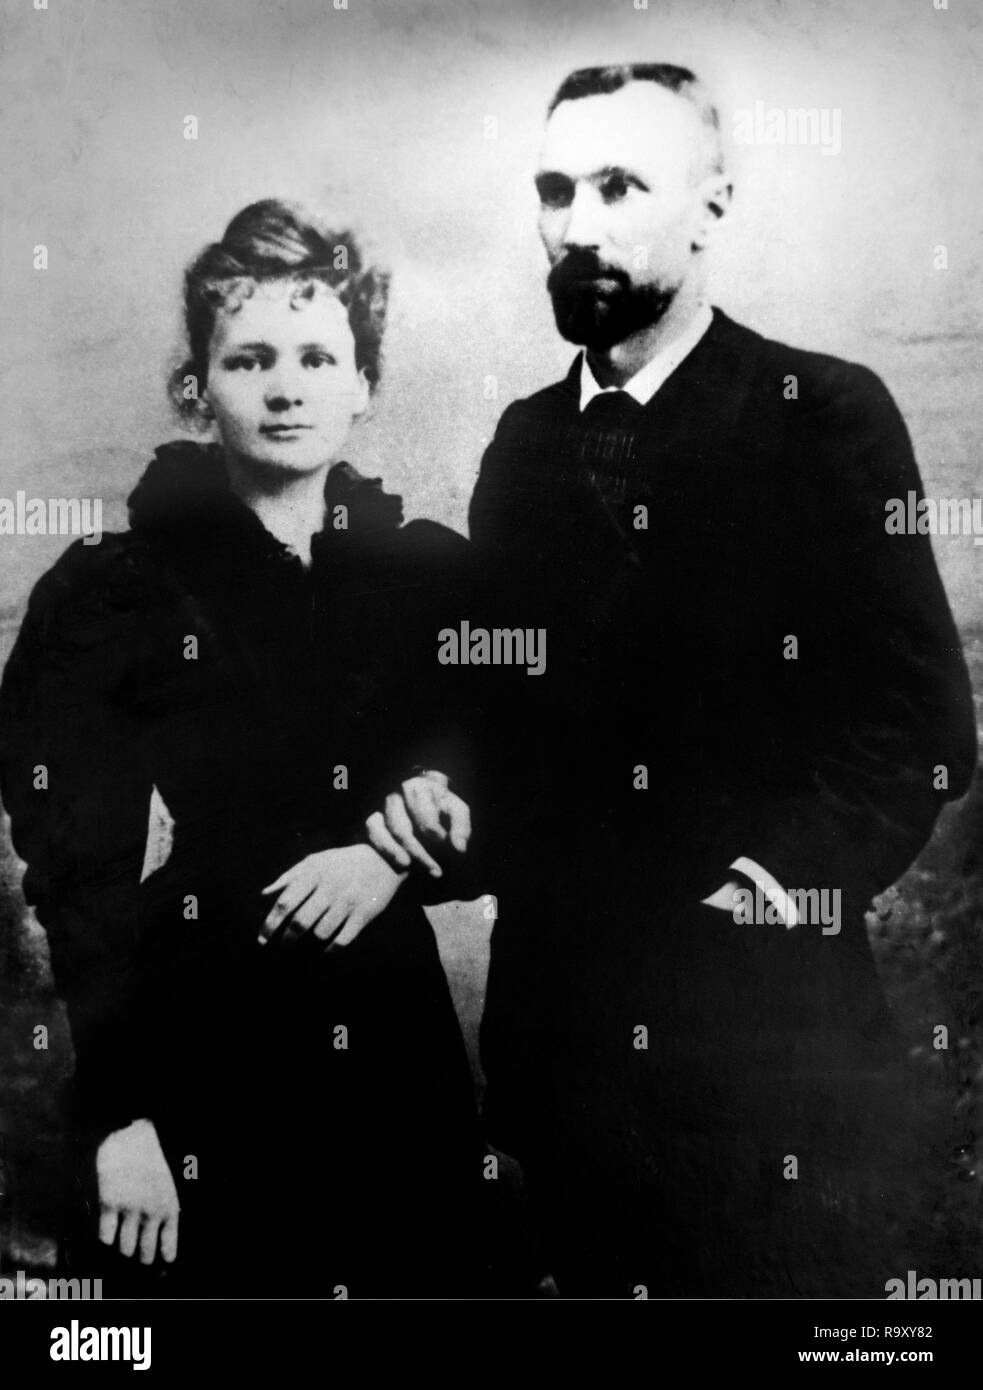 Pierre et Marie Curie. Le Prix Nobel grand scientifique, Marie Skłodowska Curie (1867-1934) et son mari, Pierre Curie (1859-1906). Photo prise en 1895. Banque D'Images